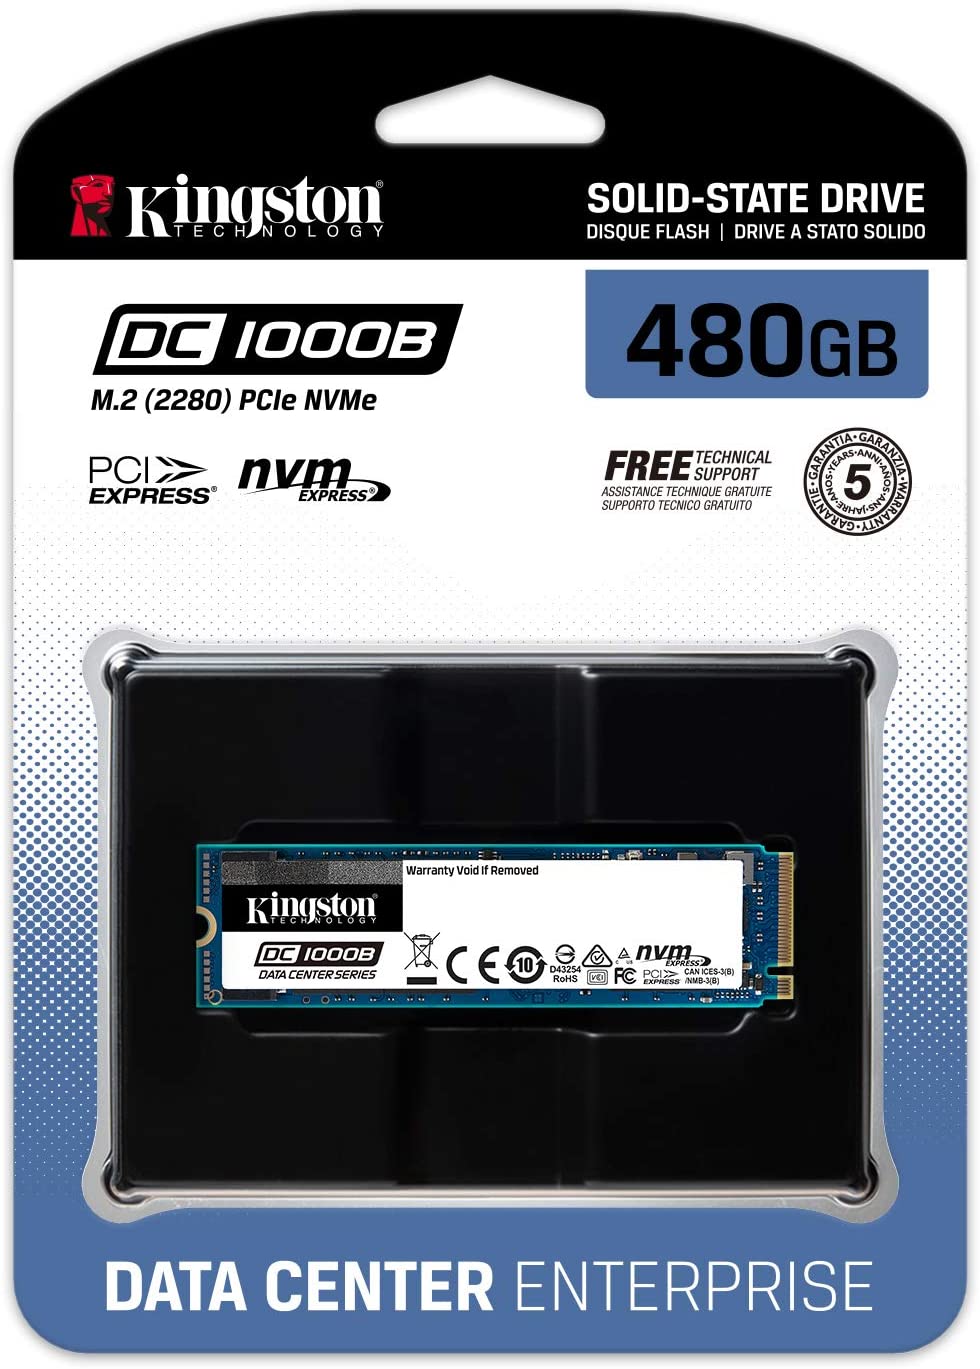 Kingston 480G DC1000B M.2 2280 NVME SSD Enterprise